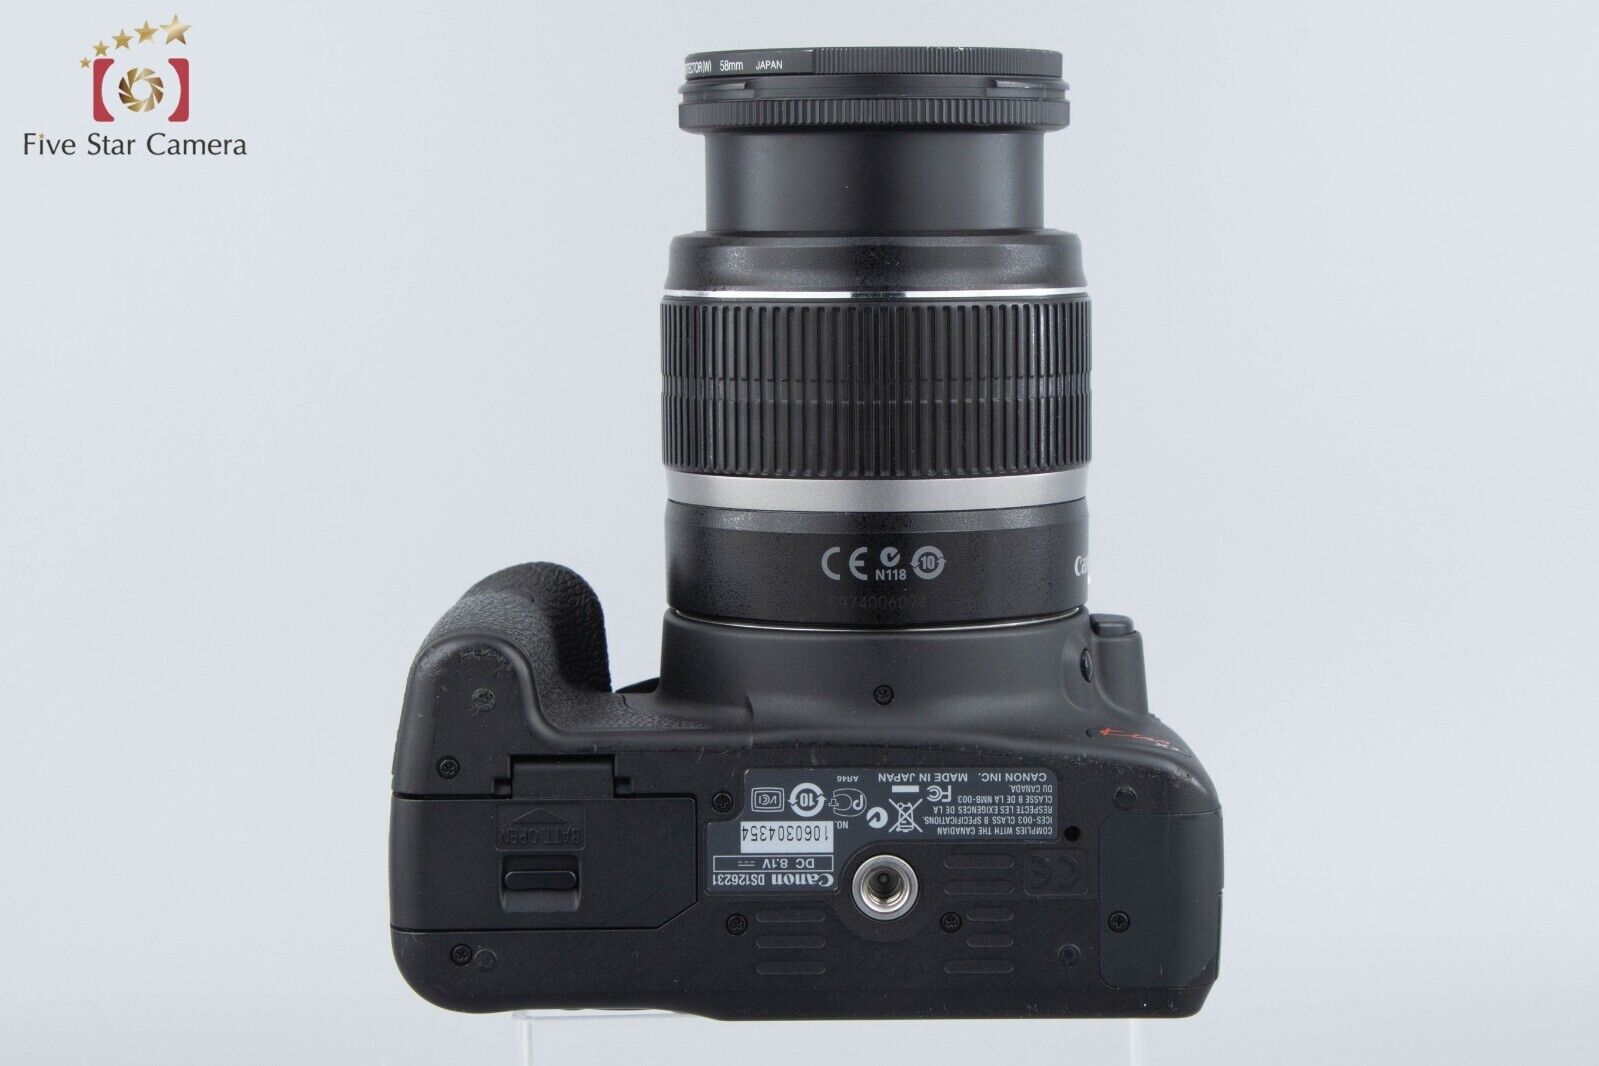 "Count 3,608" Canon EOS Kiss X3 / Rebel T1i / 500D 15.1MP EF-S 18-55 IS Lens Kit